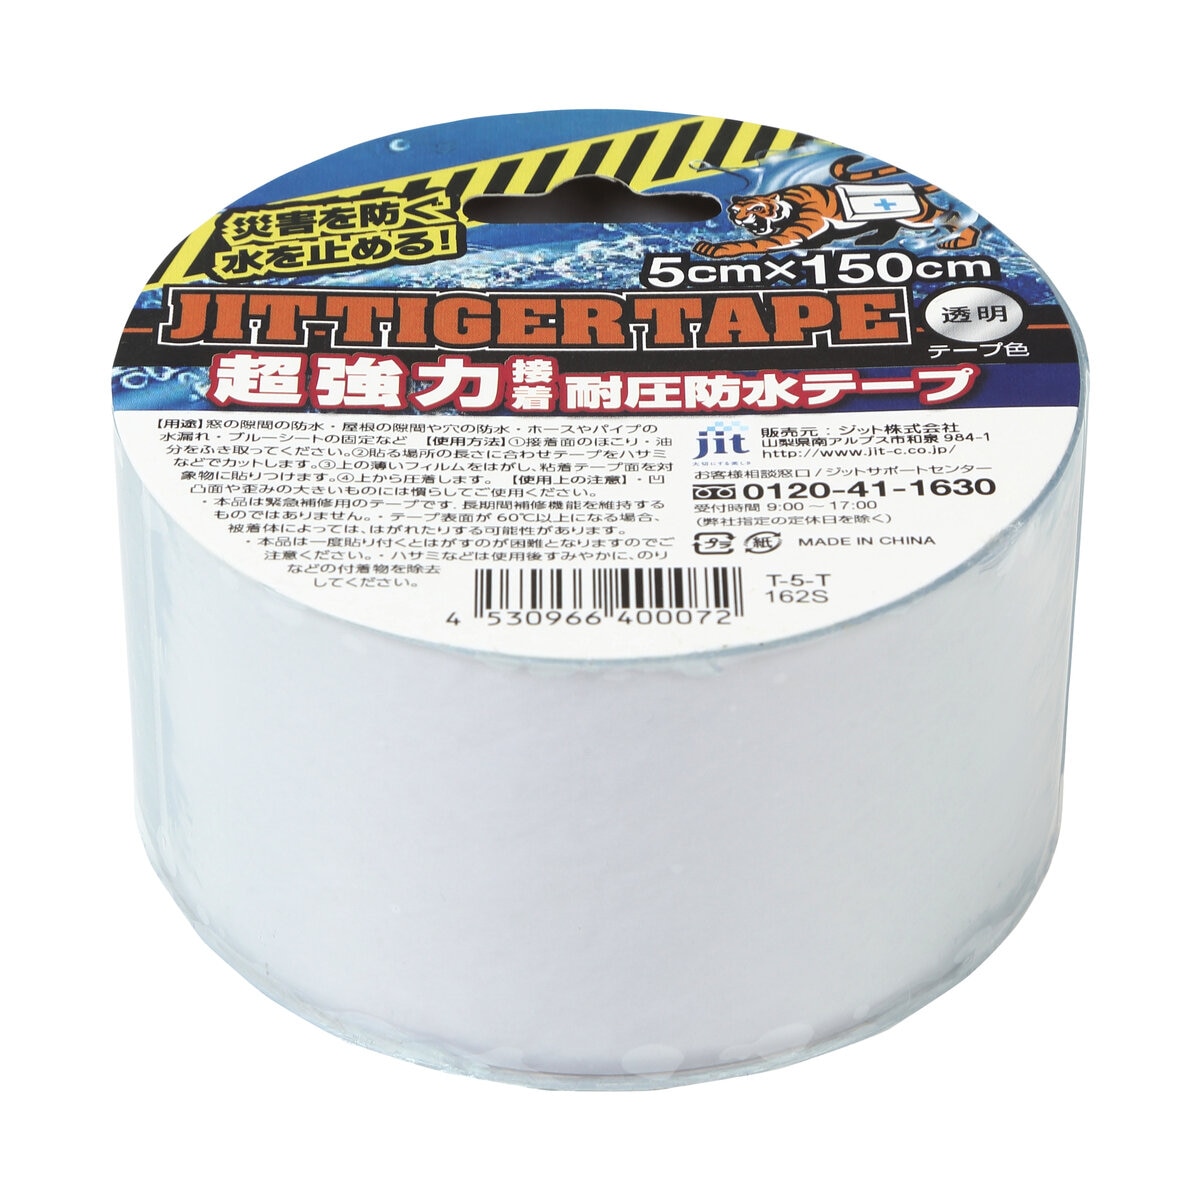 ジット 超強力耐圧・耐水 タイガーテープ 5x150cm クリア Costco Japan